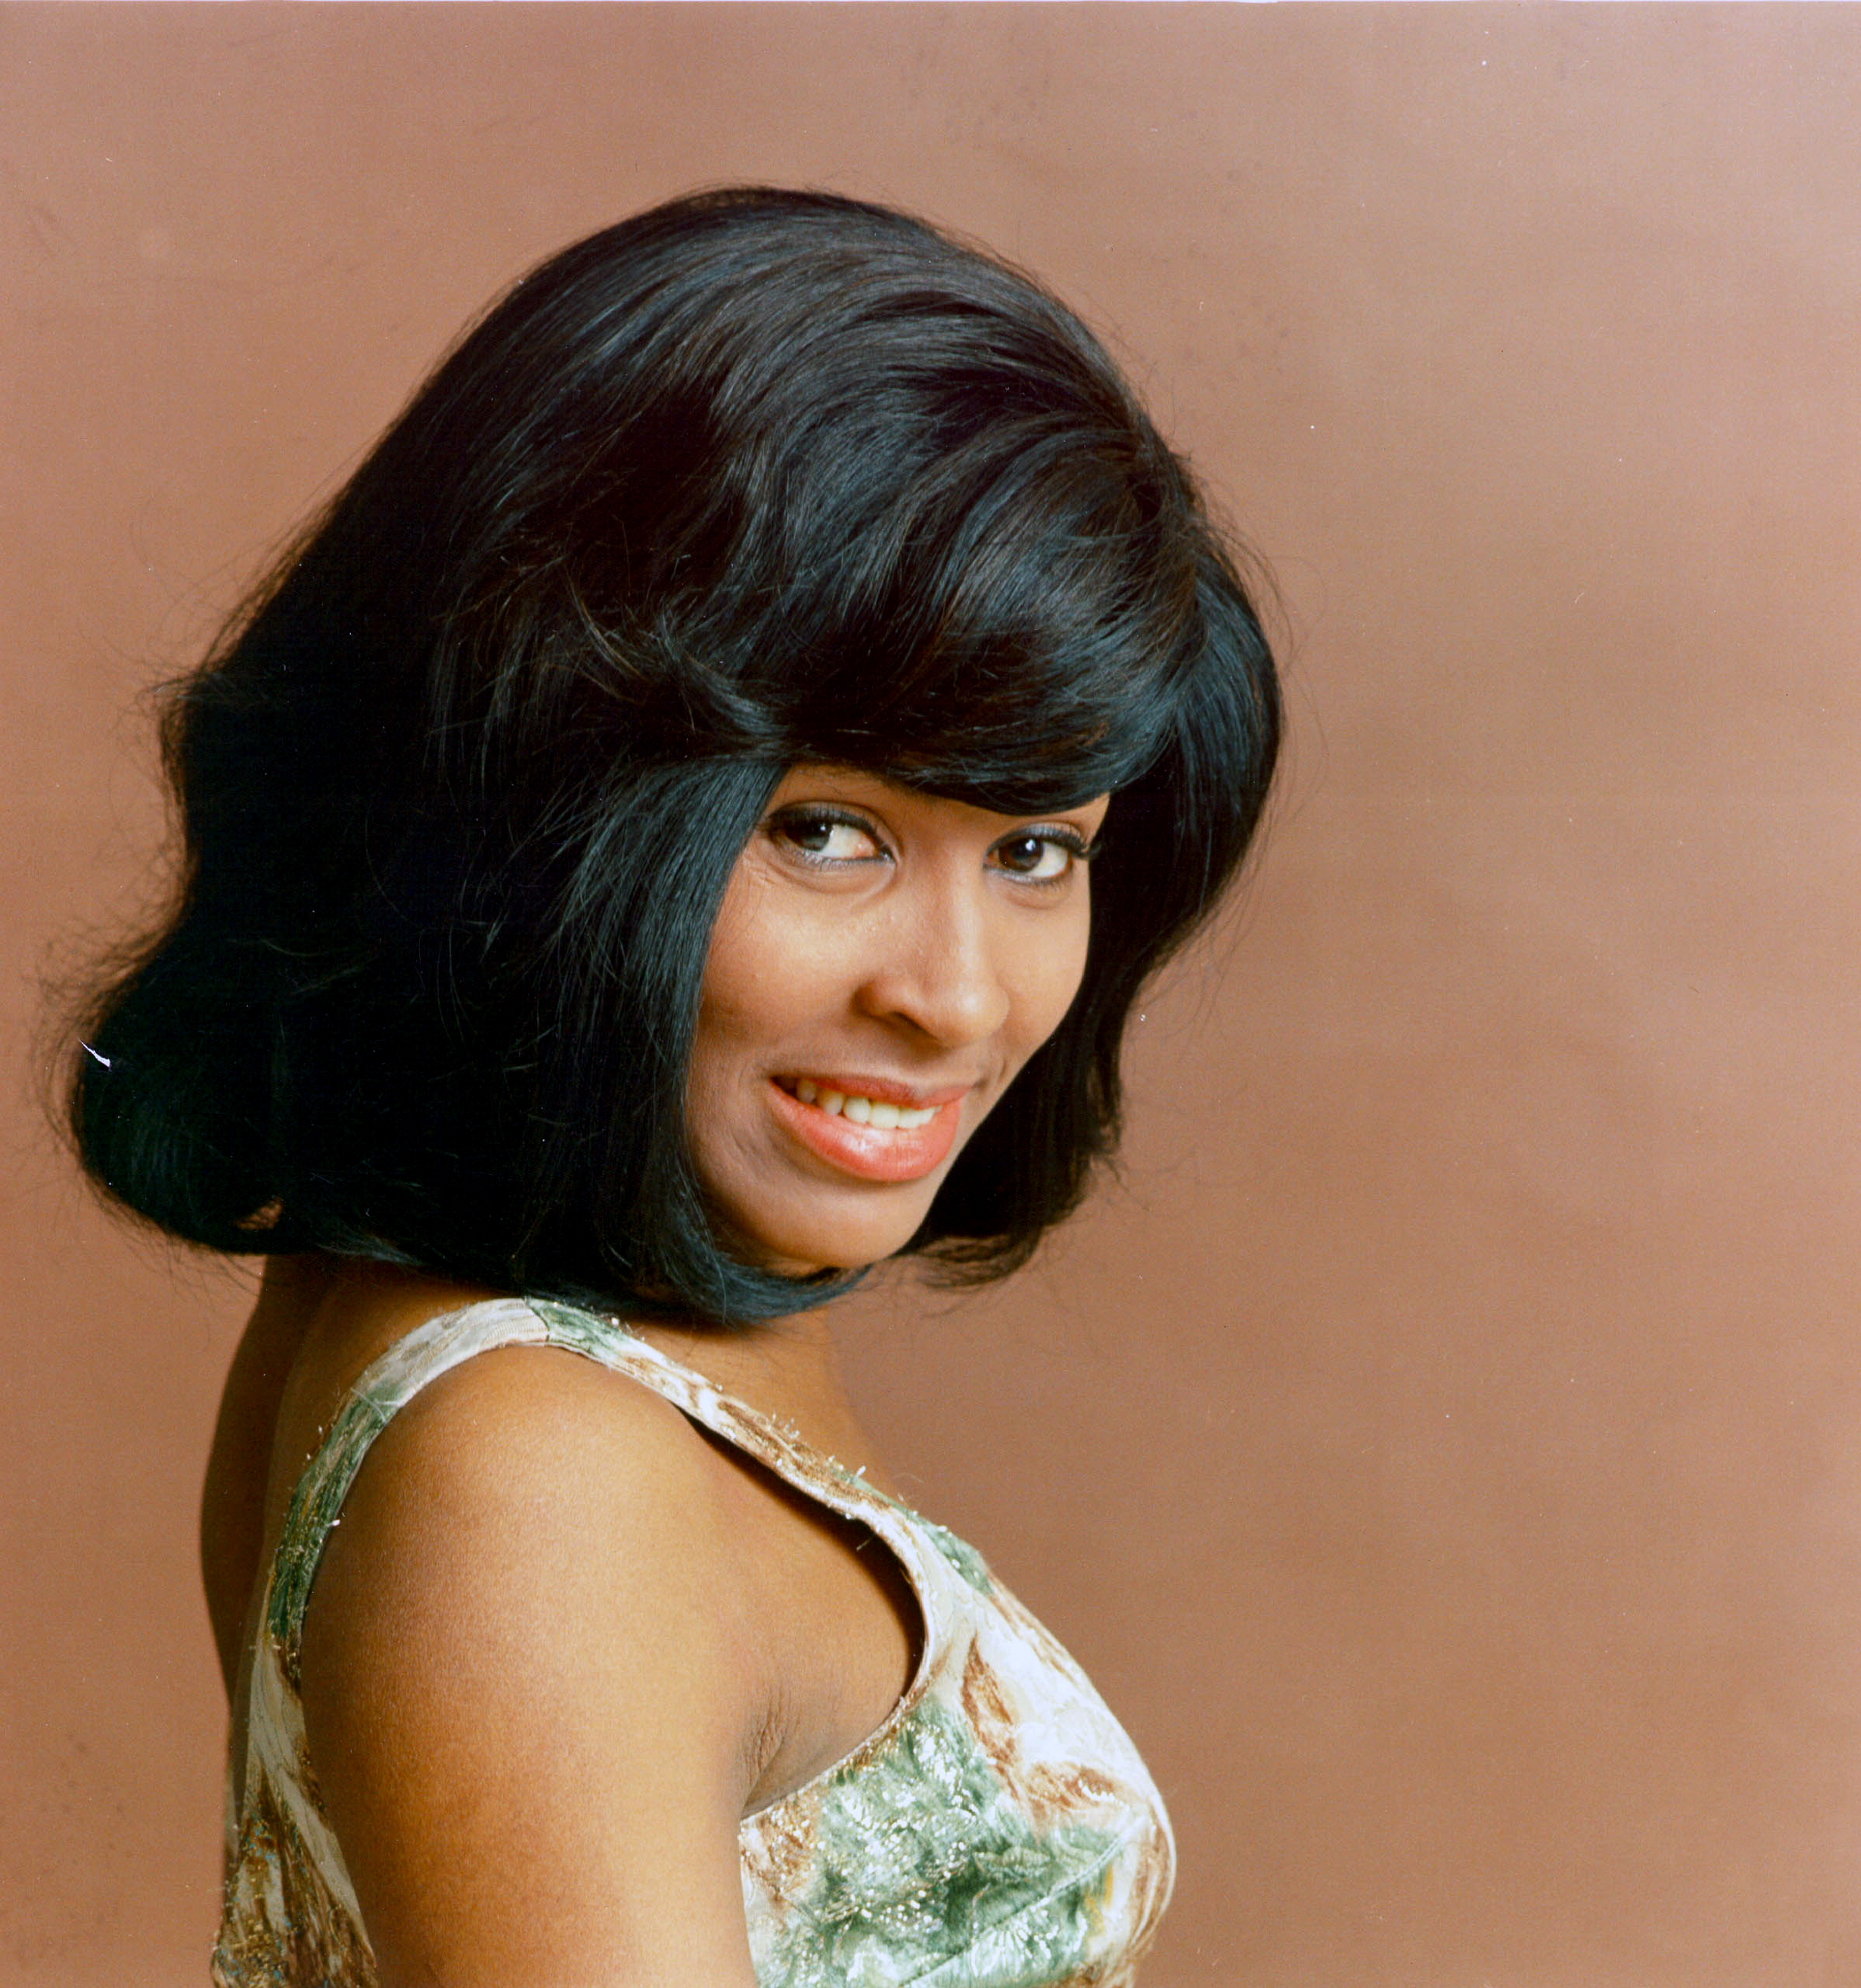 La chanteuse pose pour un portrait en 1964. | Source : Getty Images